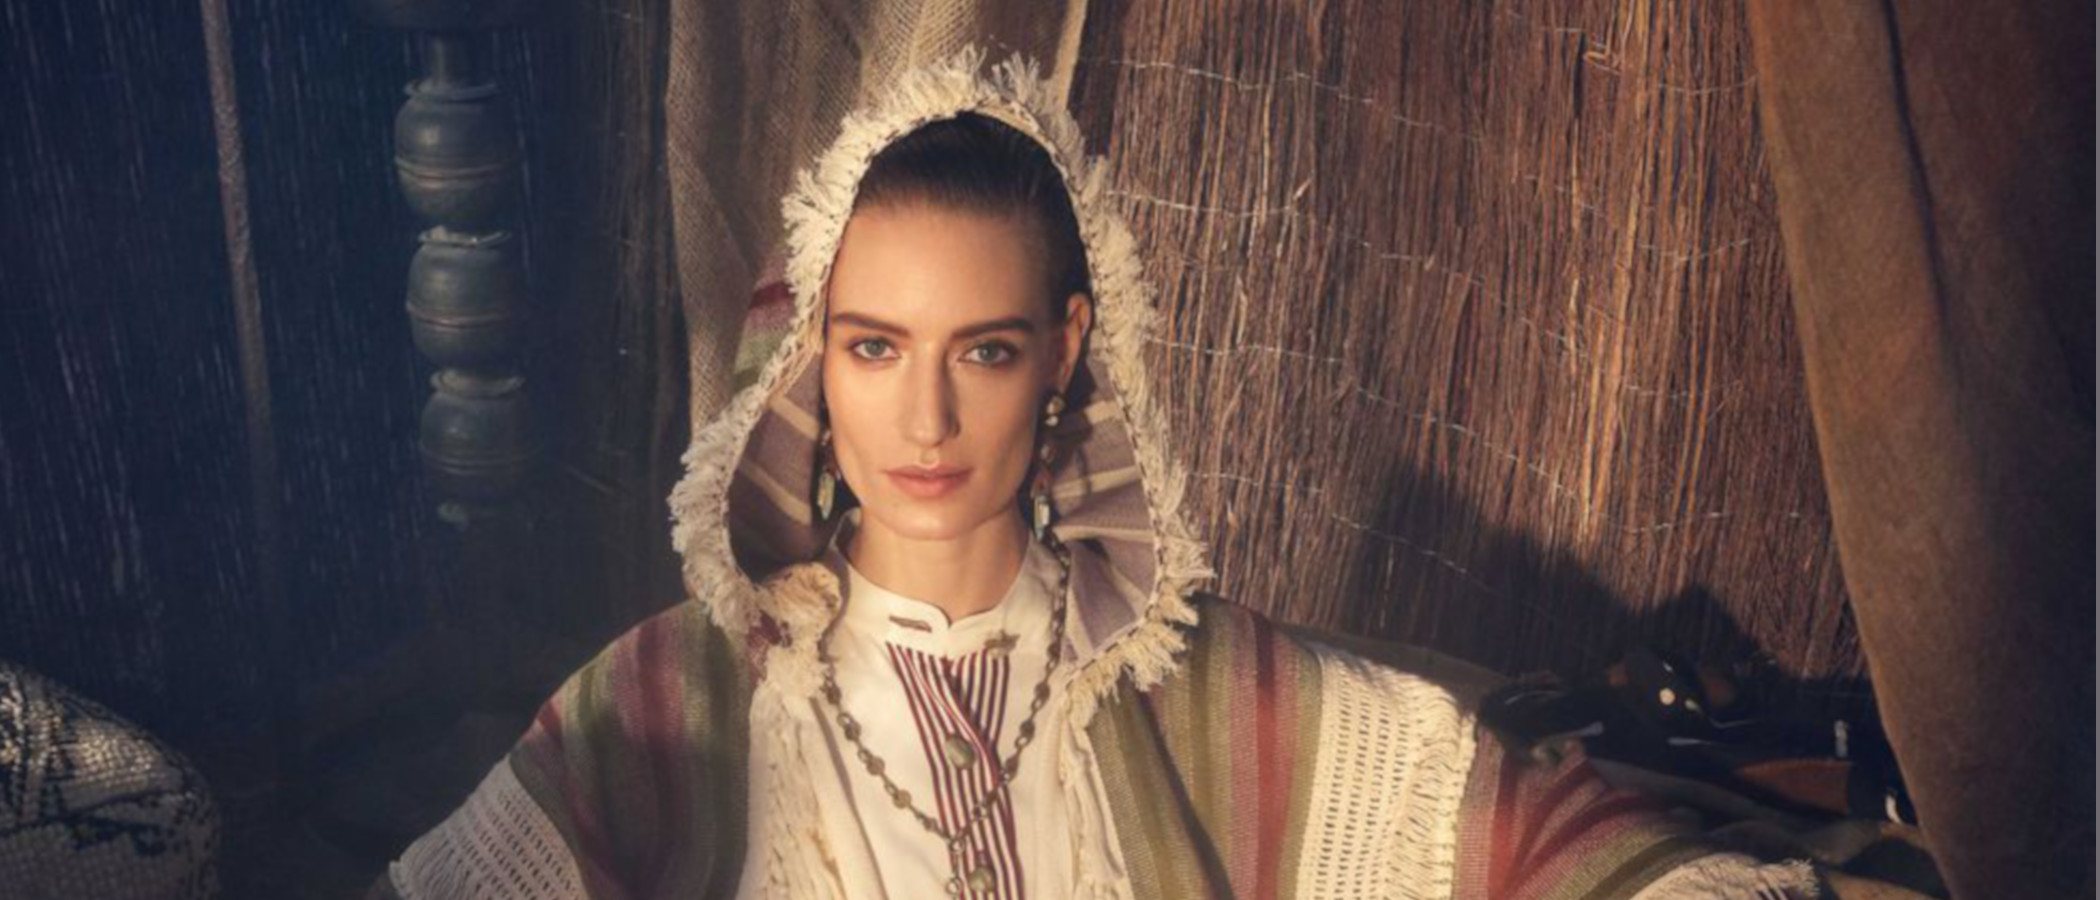 Marruecos es la inspiración de Zara para su nueva colección primavera/verano 2019